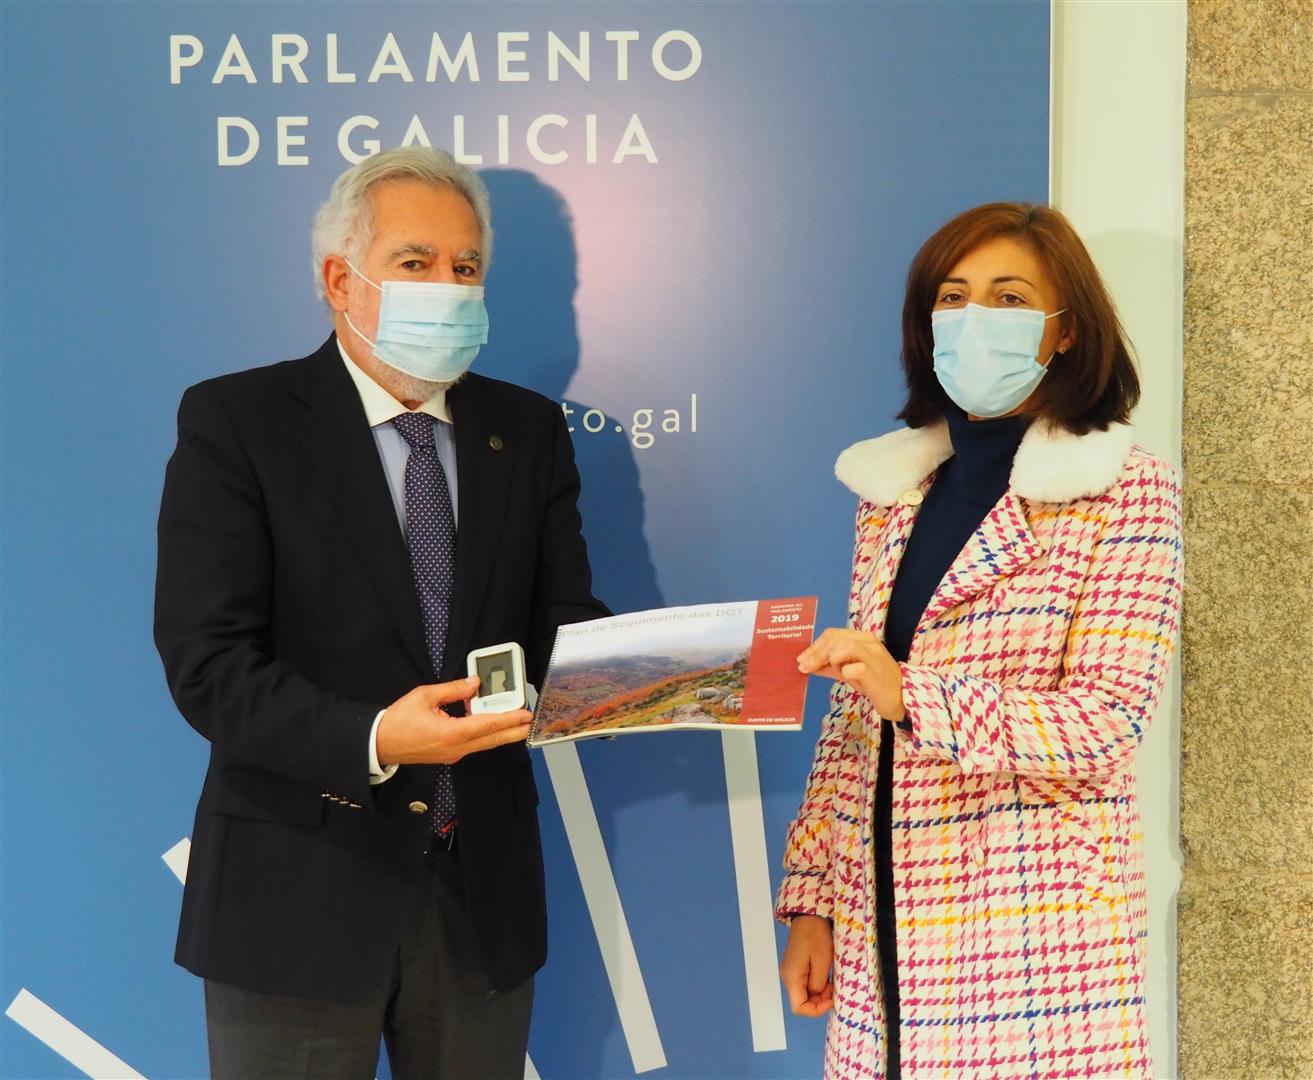 Foto da noticia:A conselleira de Medio Ambiente entrega a memoria das Directrices de Ordenación do Territorio ao presidente do Parlamento